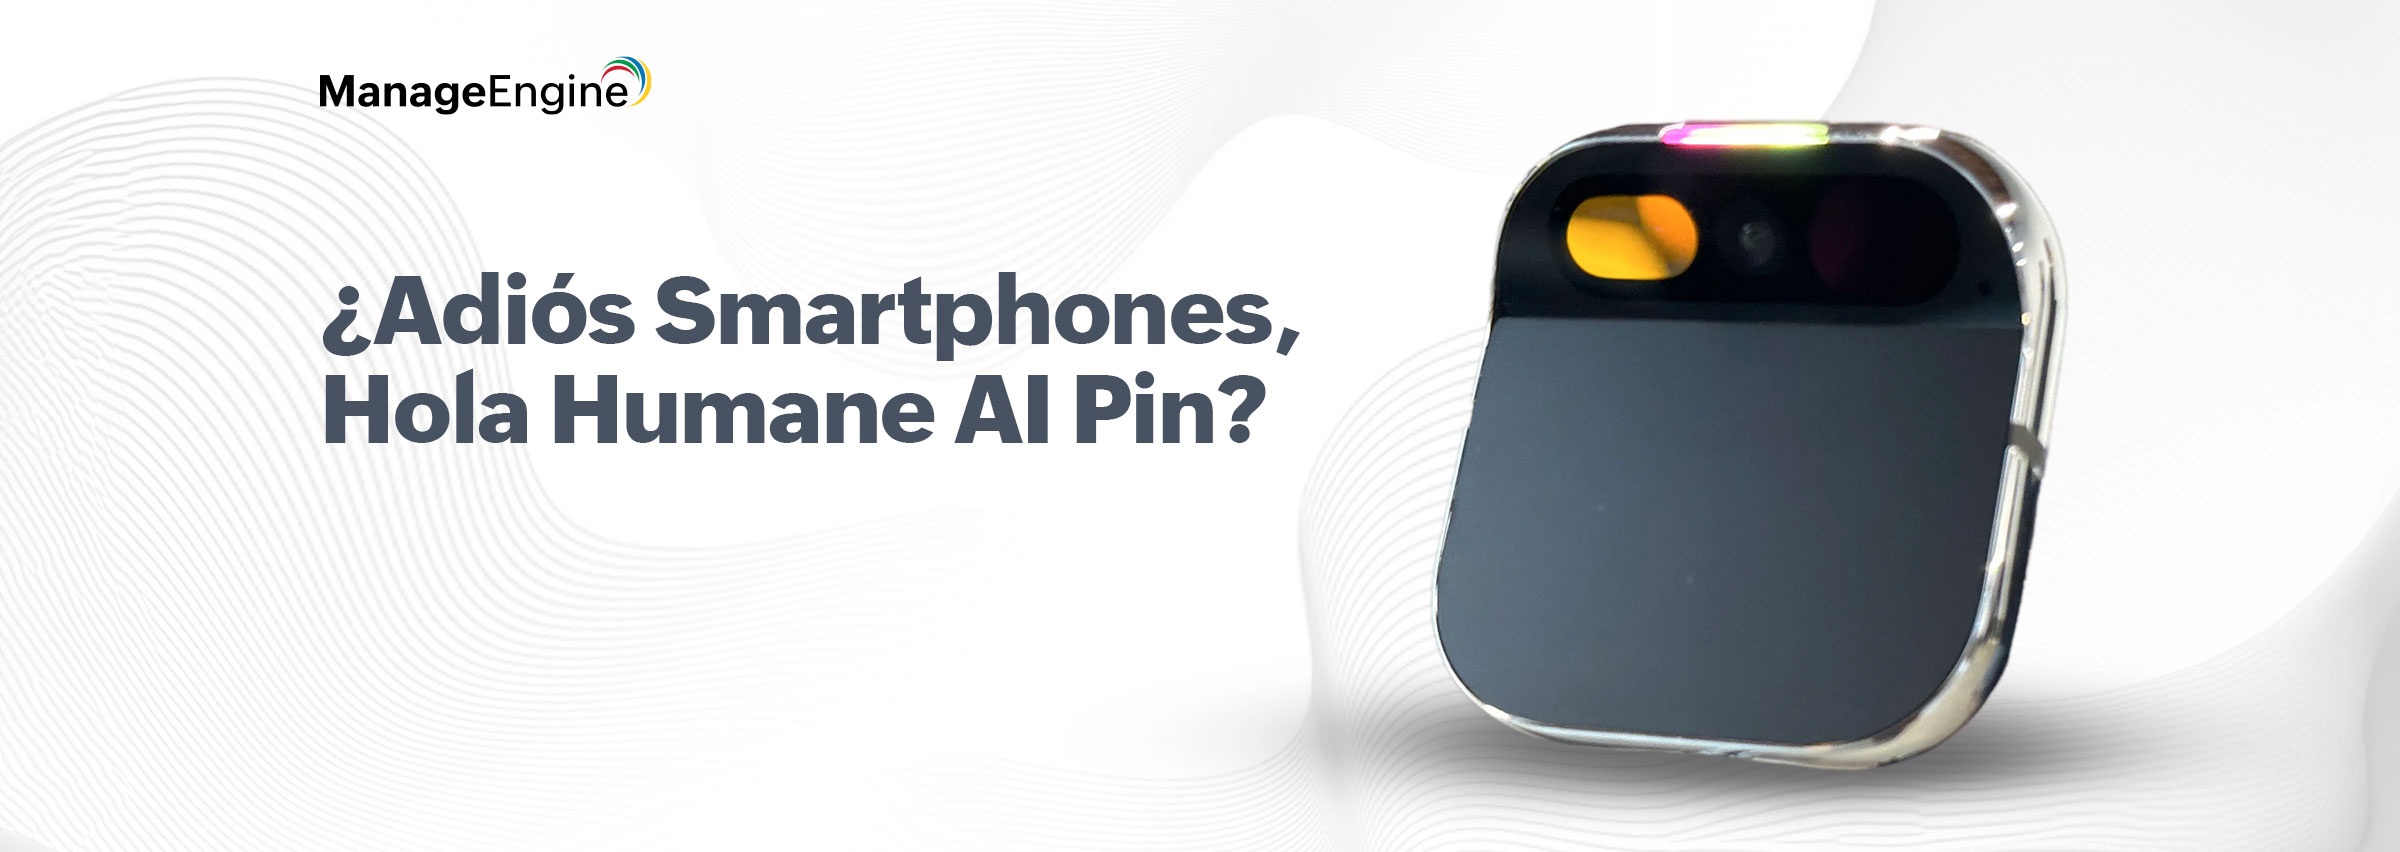 ¿Adiós a los smartphones? Conoce AI Pin, el dispositivo que proyecta una interfaz en tu mano y te liberará de las pantallas